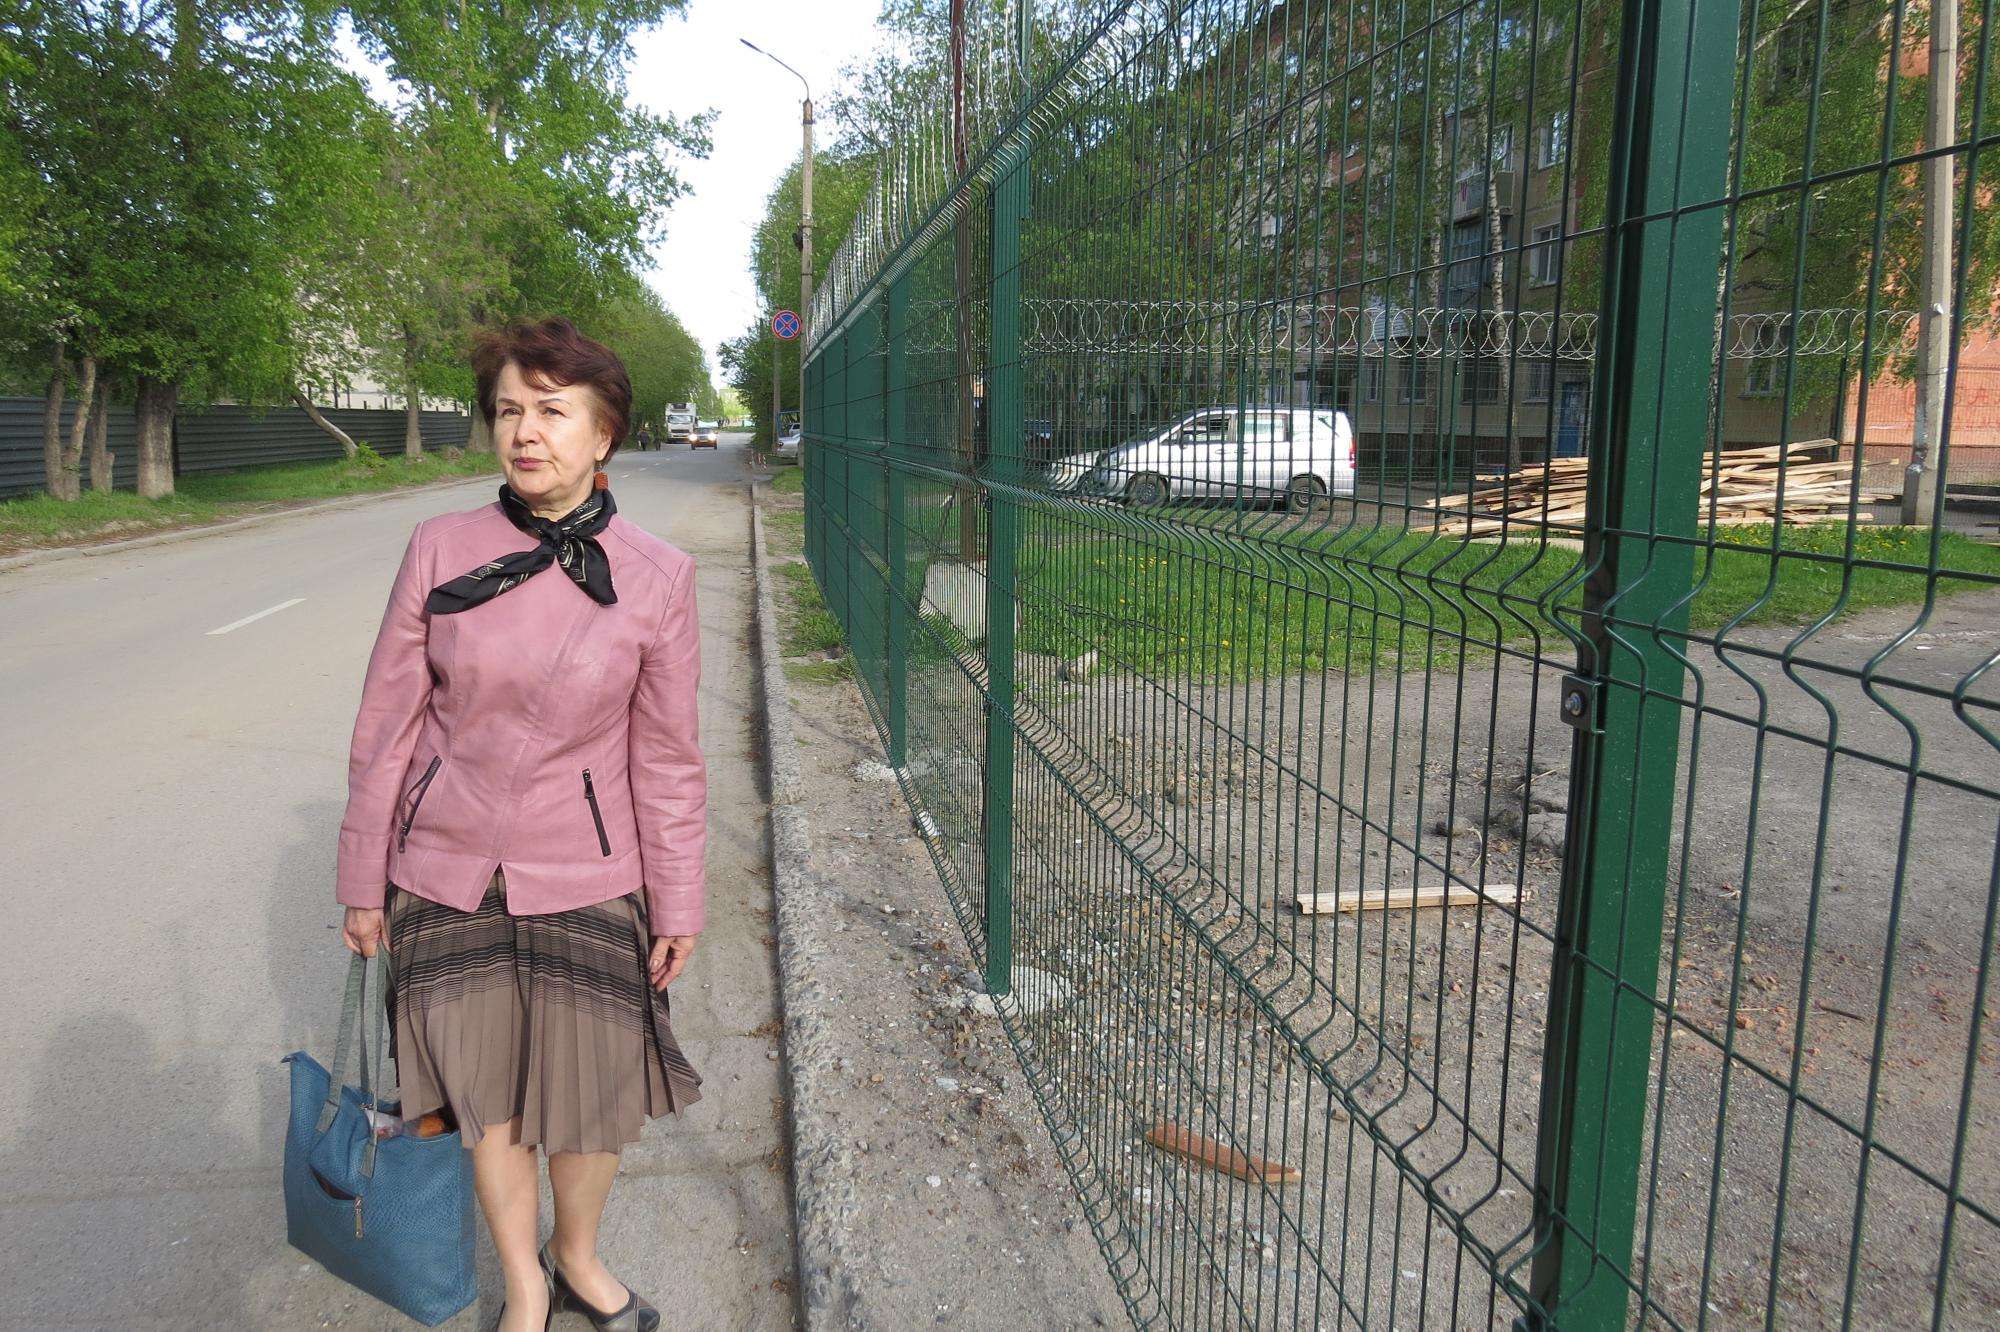 Вдоль забора с колючей проволокой: ограда вокруг бывшего клуба мешает пешеходам Бердска